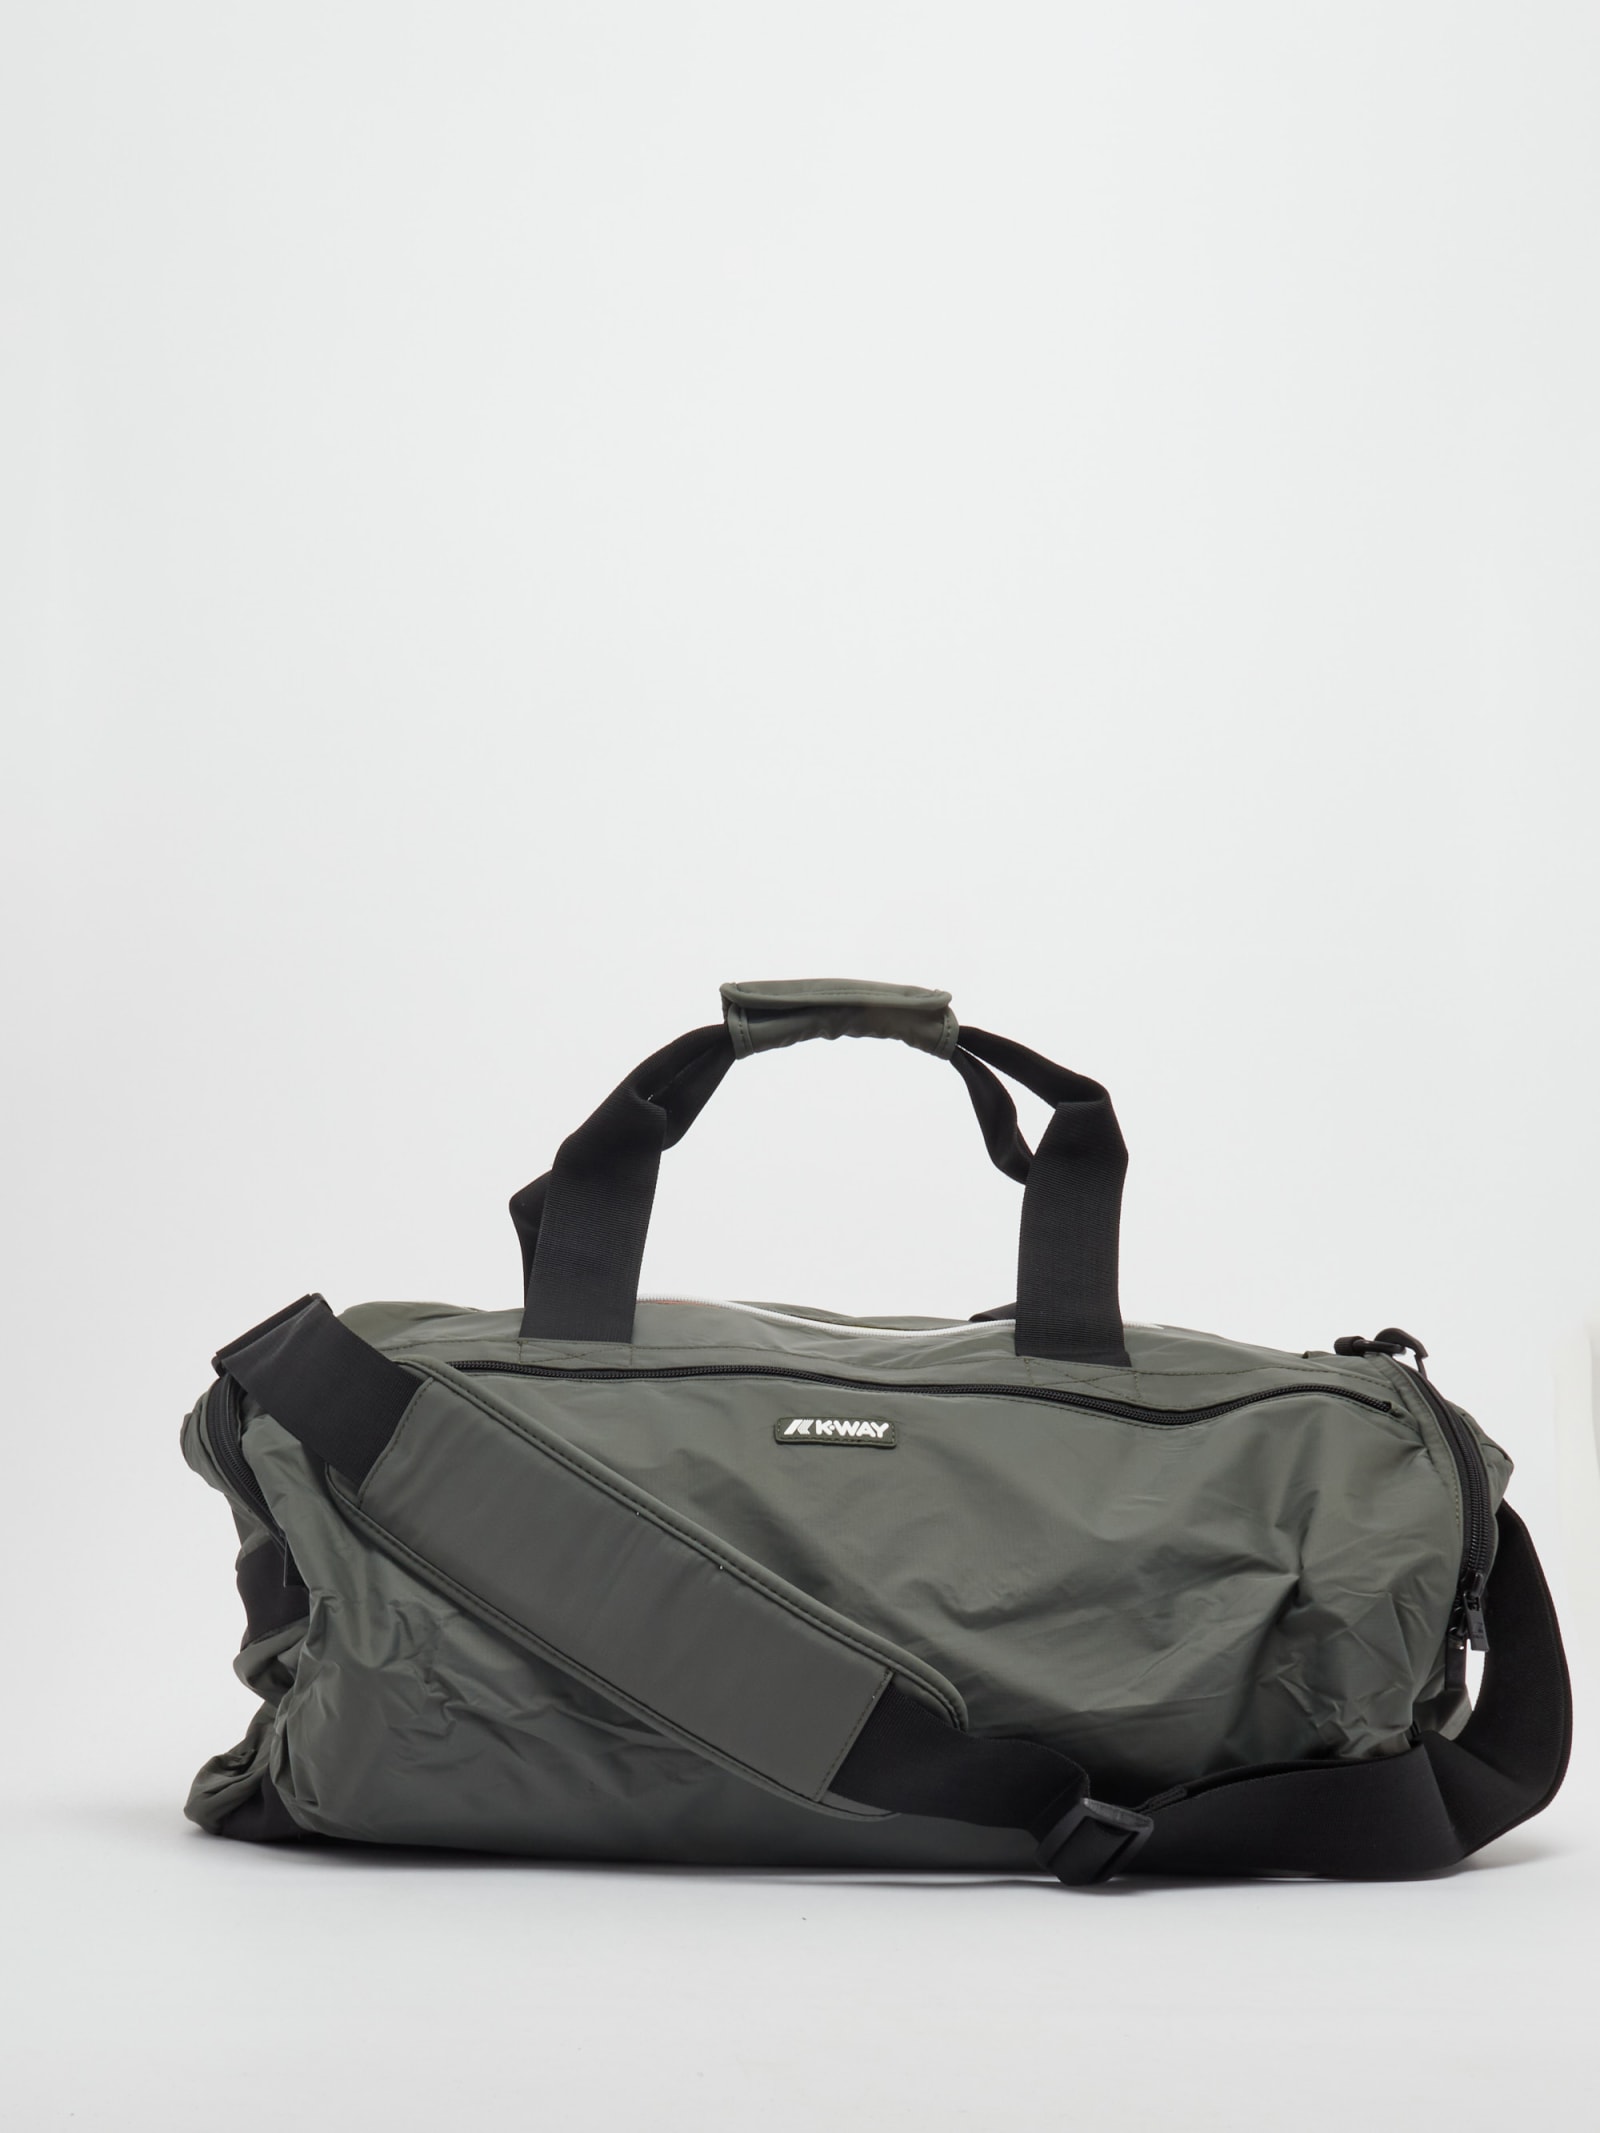 K-Way Mareville Bag Duffle Shoulder Bag